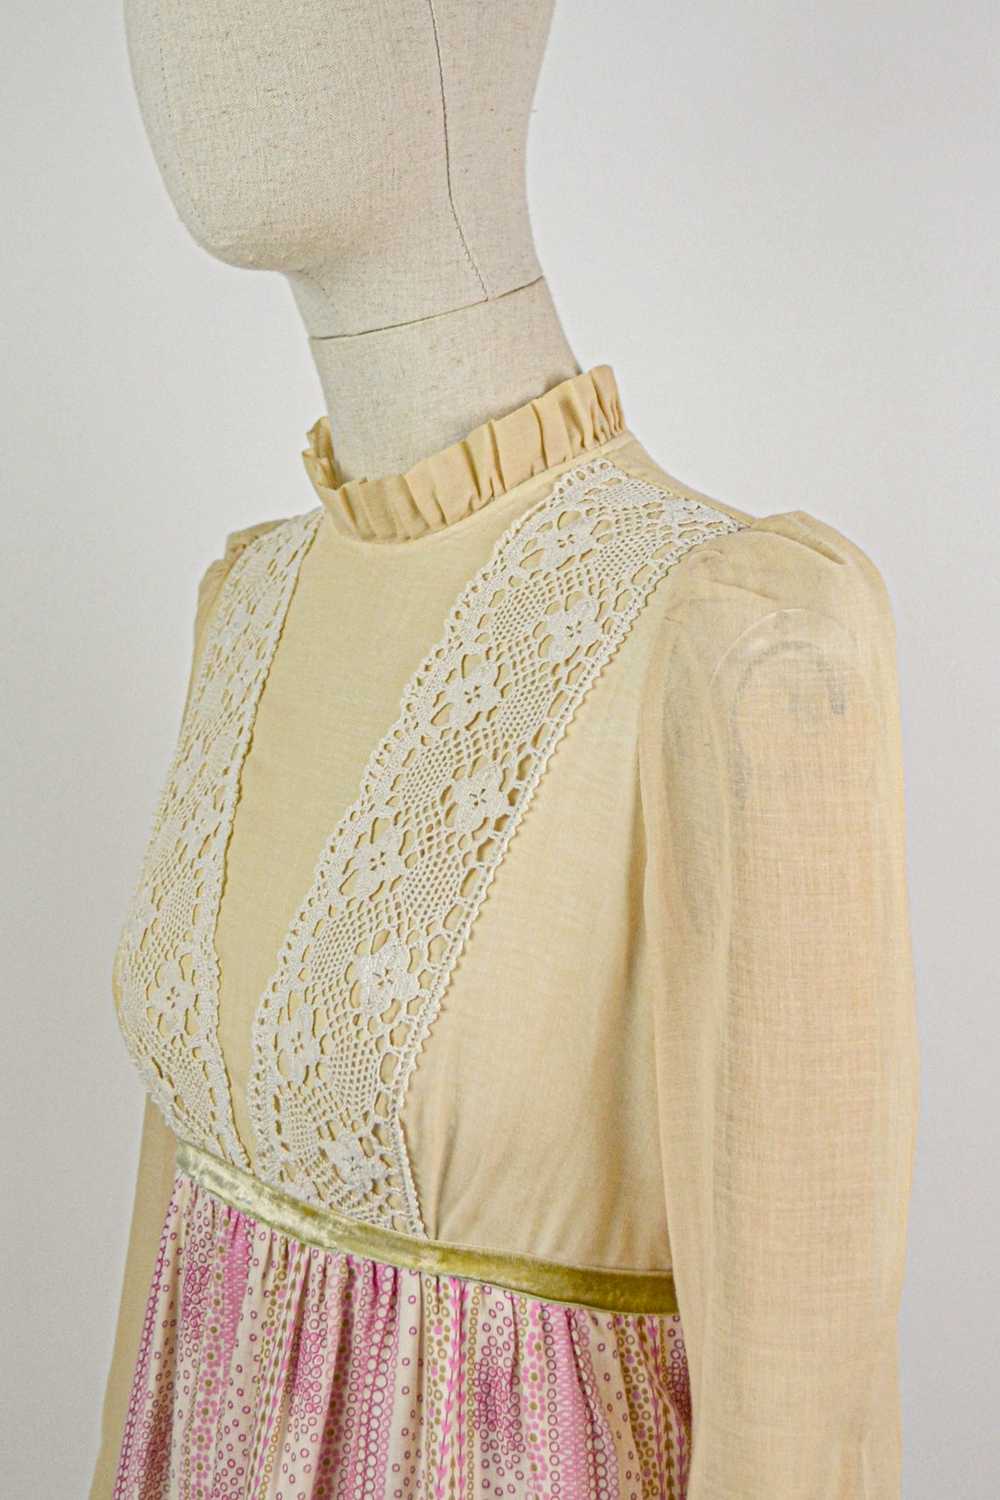 QUAINT - 1970s Vintage Angela Gore Prairie Dress … - image 11